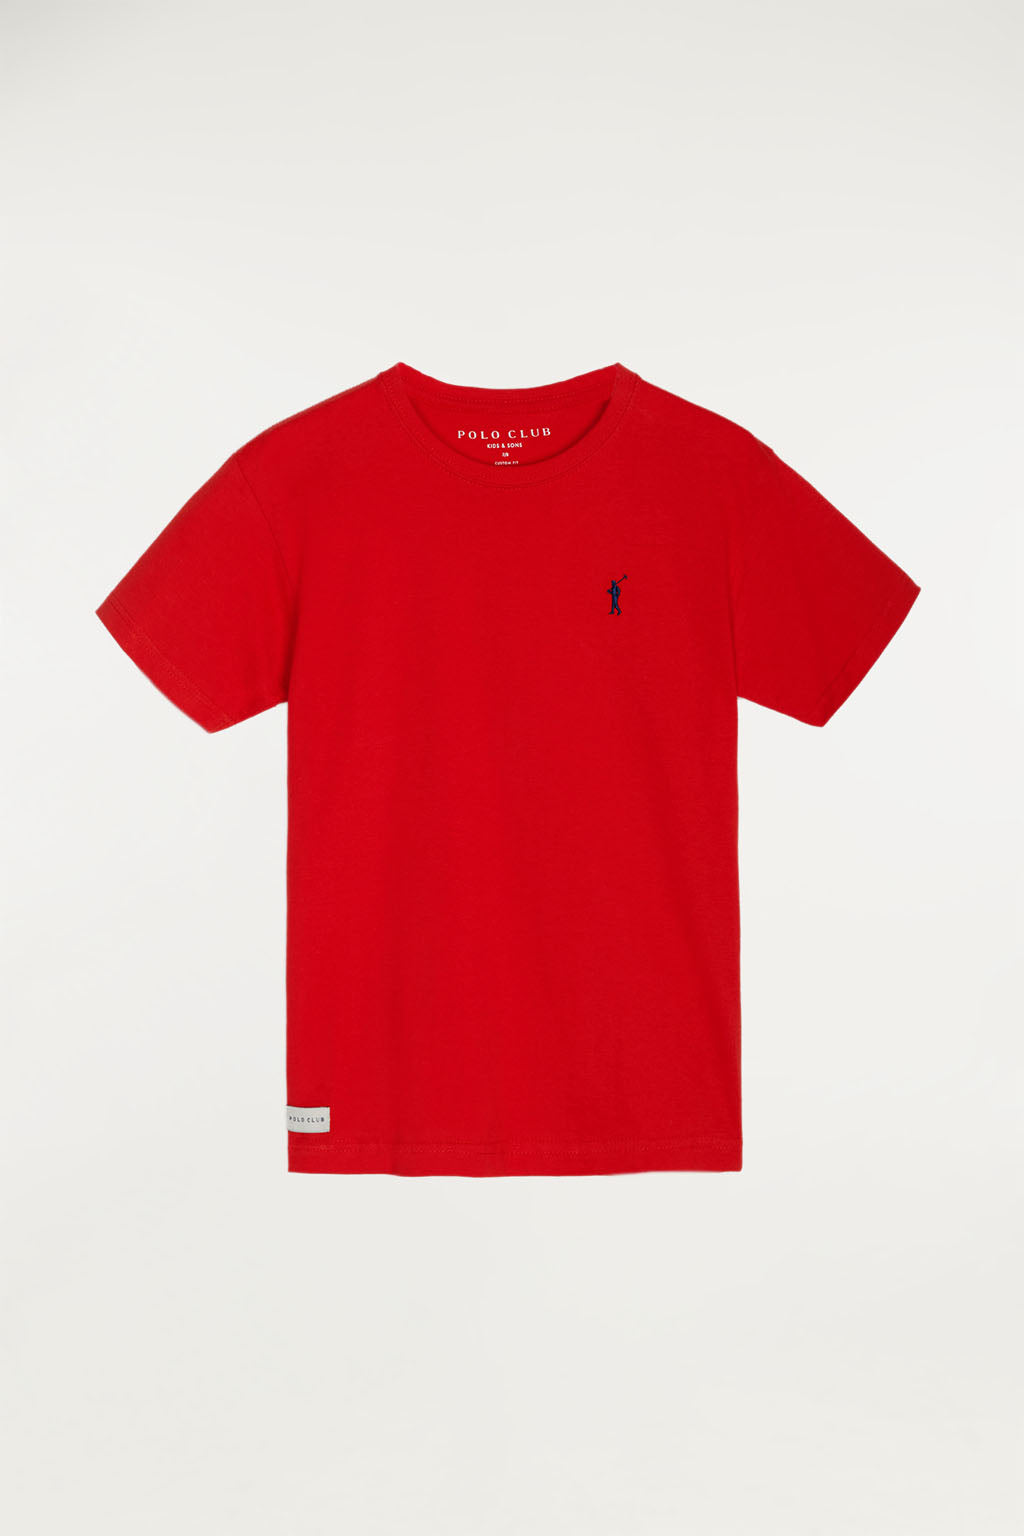 Camiseta roja con pequeño logo bordado – Polo Club